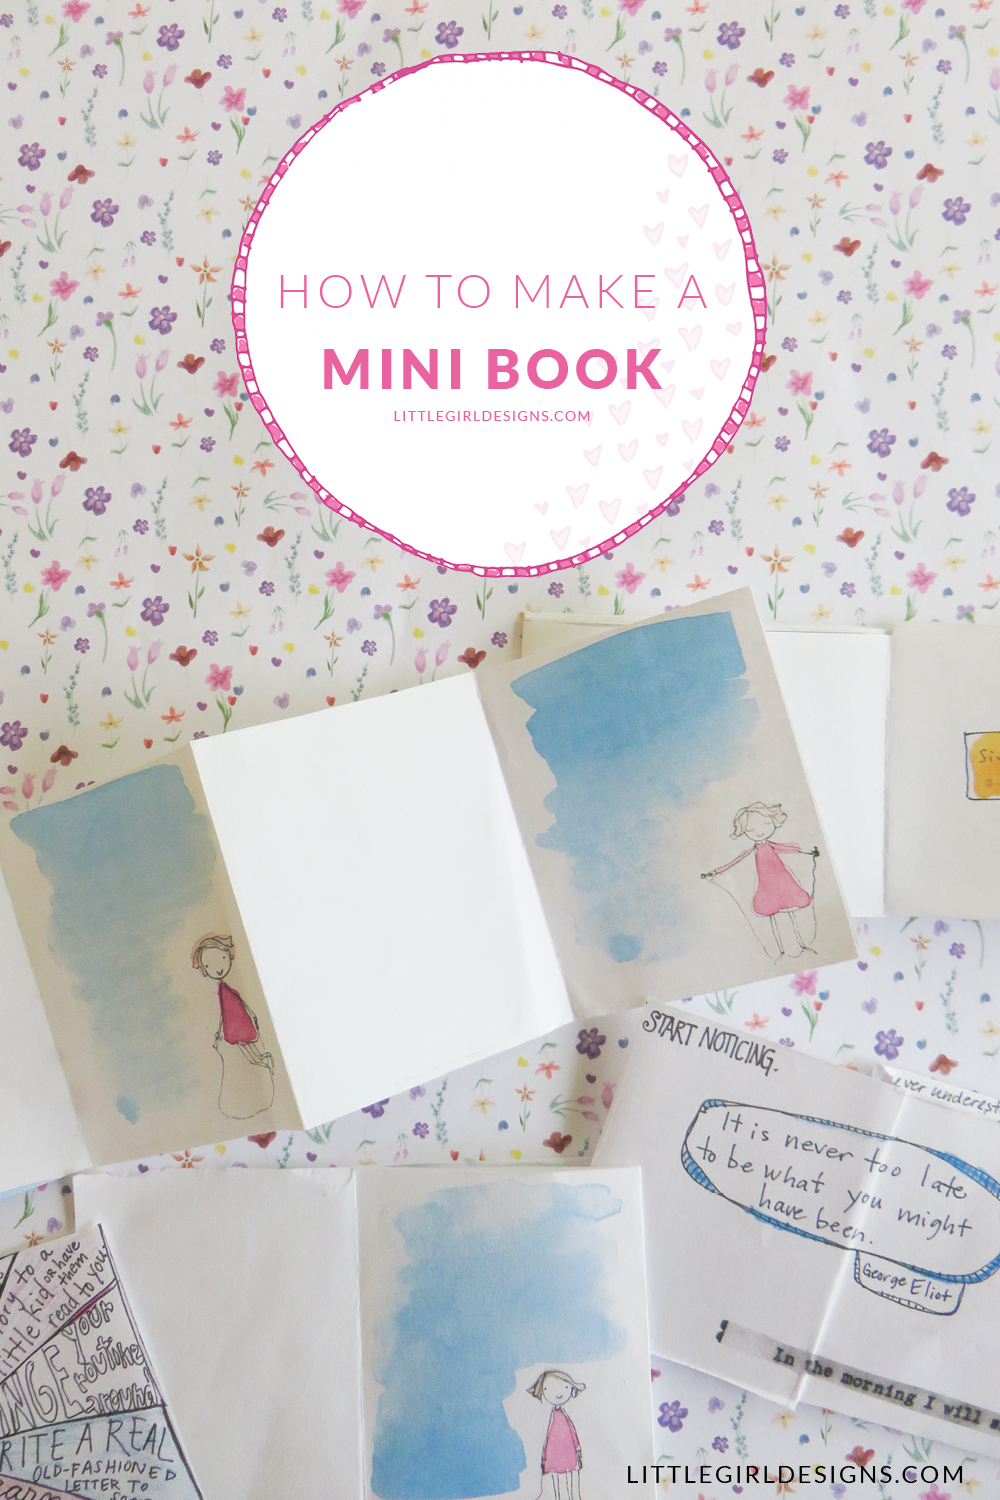 How to Make a Mini Book